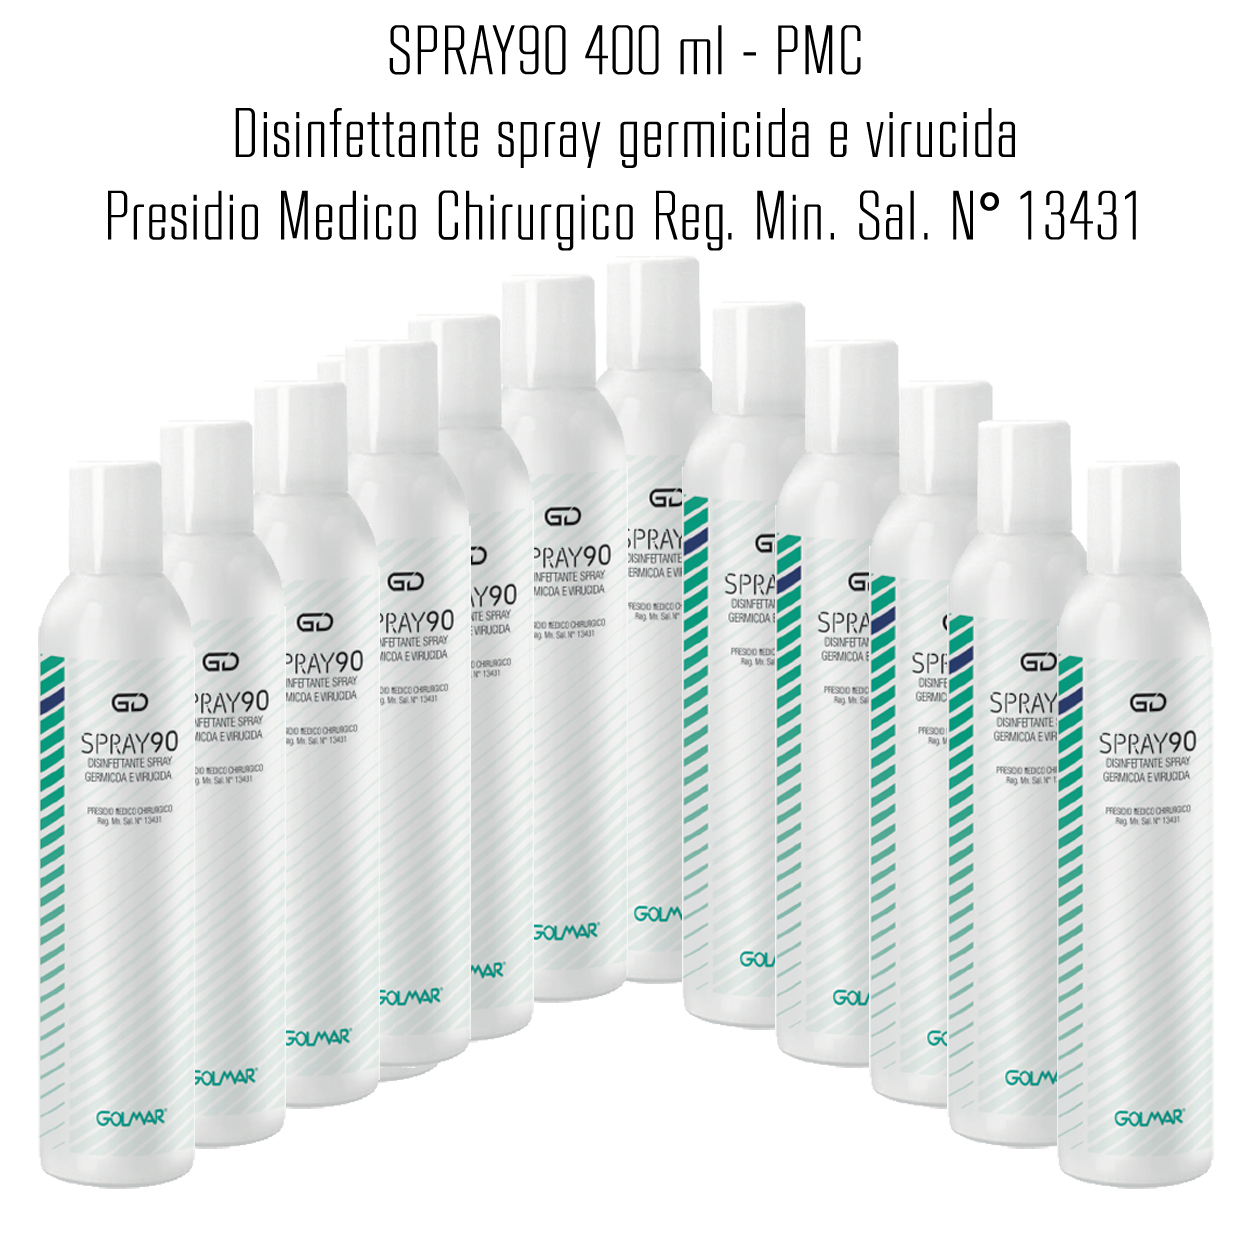 12 x GOLMAR GD90 Spray 400 ml - PMC disinfettante professionale ad ampio spettro (virucida incluso famiglia Coronavirus, battericida e levuricida) - confezione da 12 Pz.